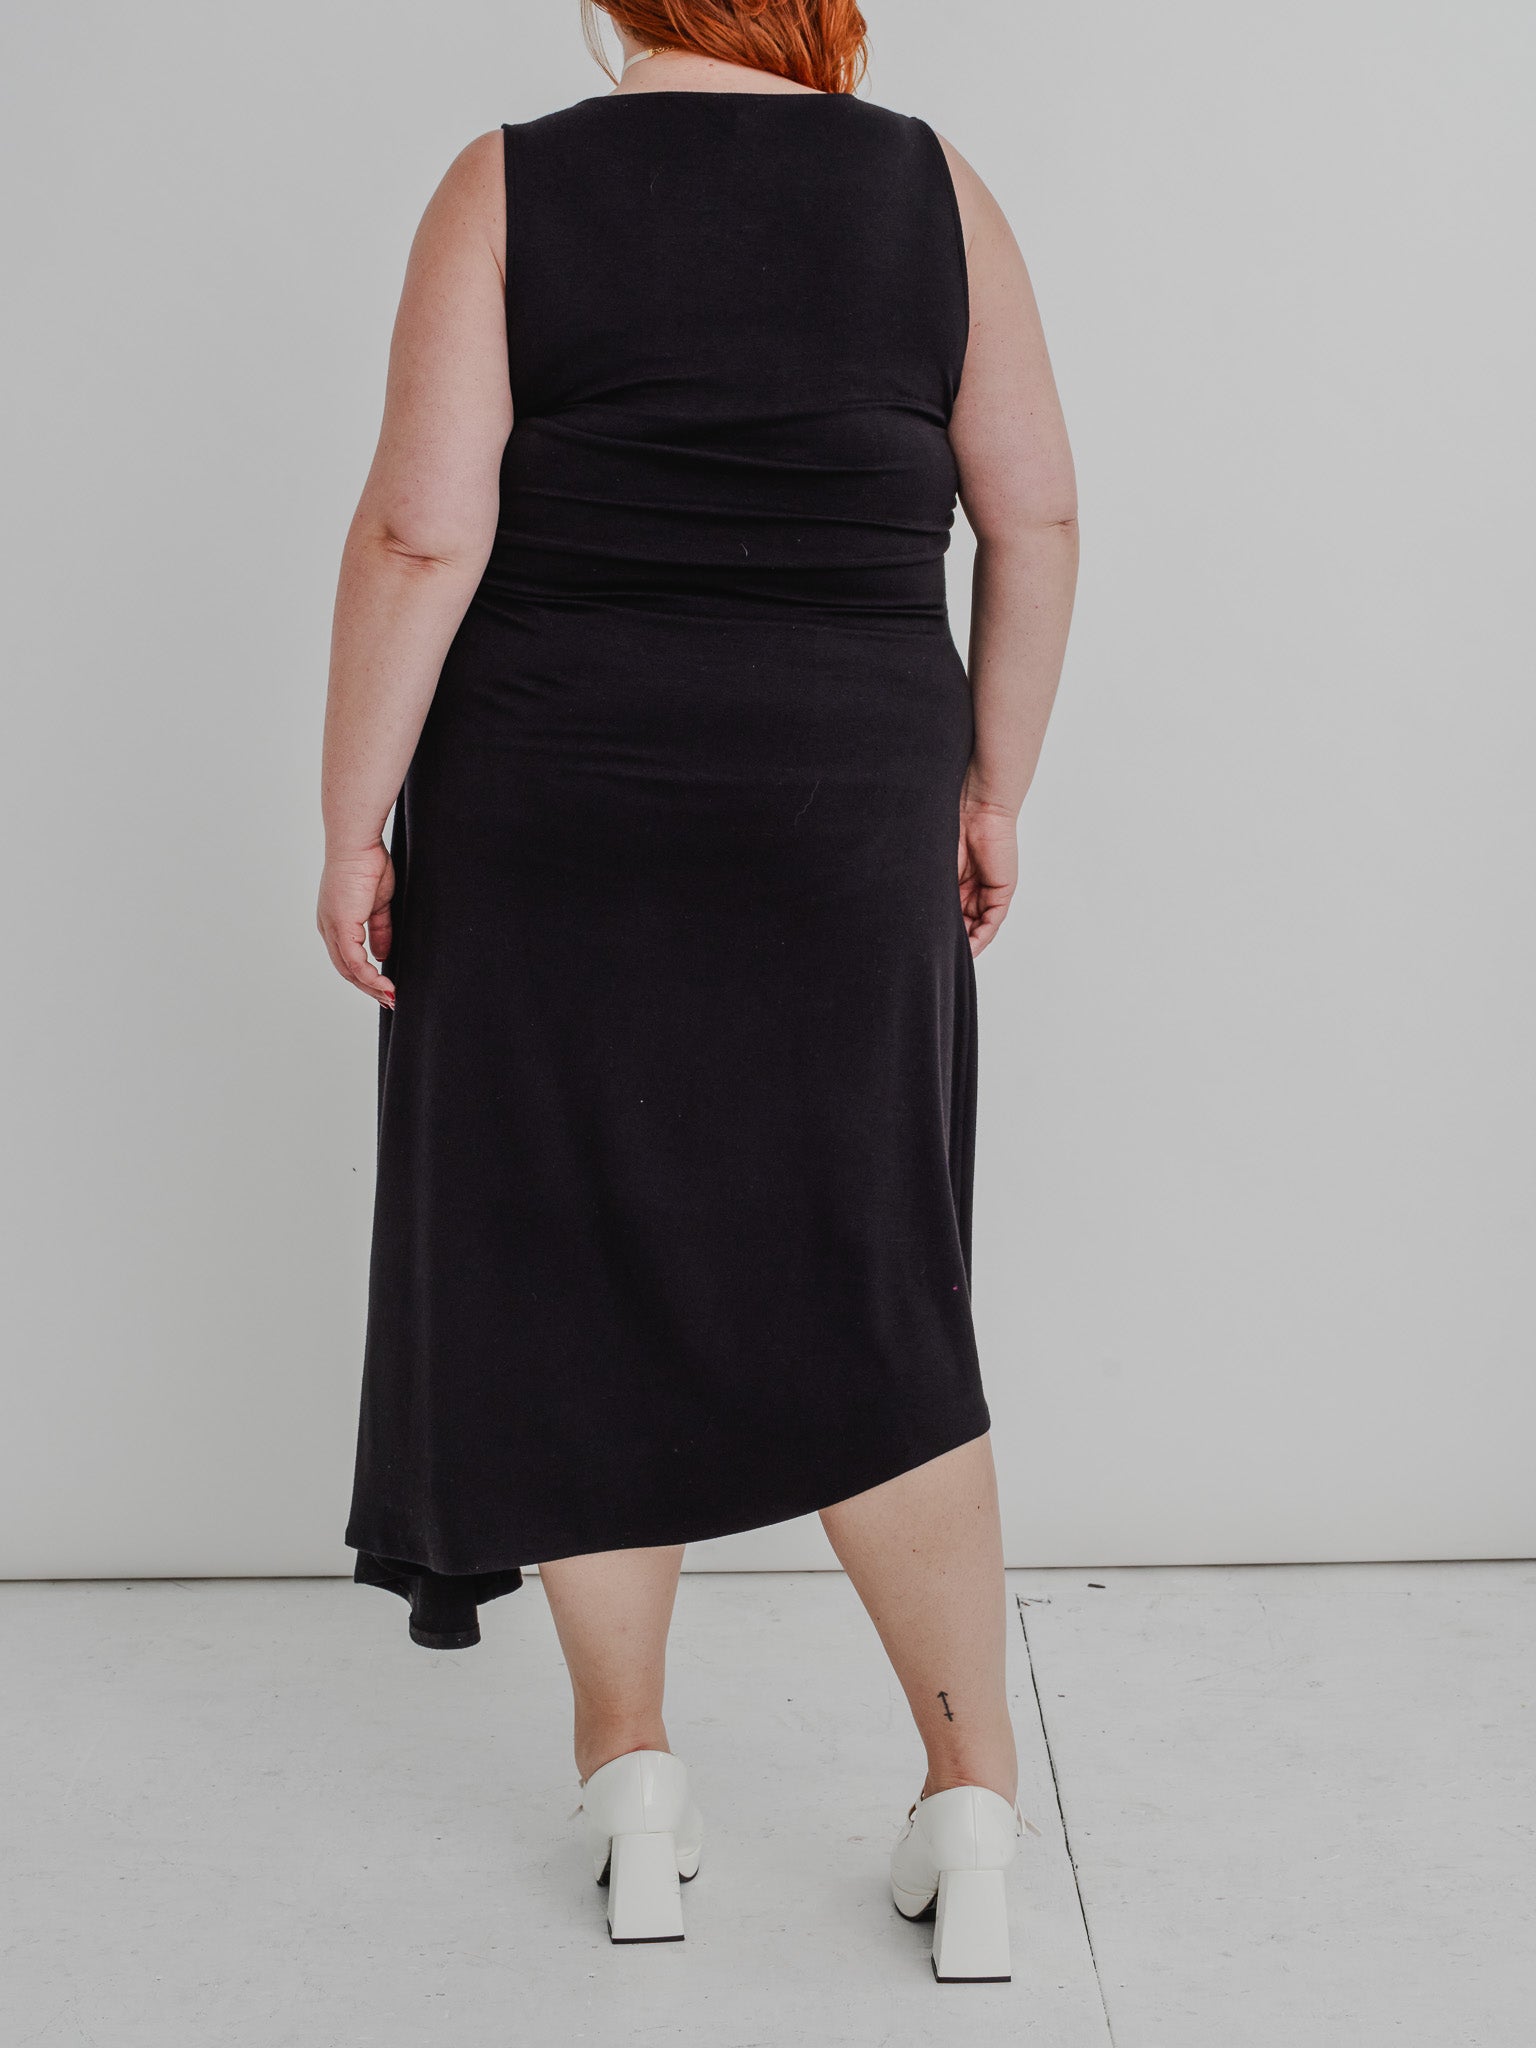 NLT - Black Asymmetrical Midi Dress